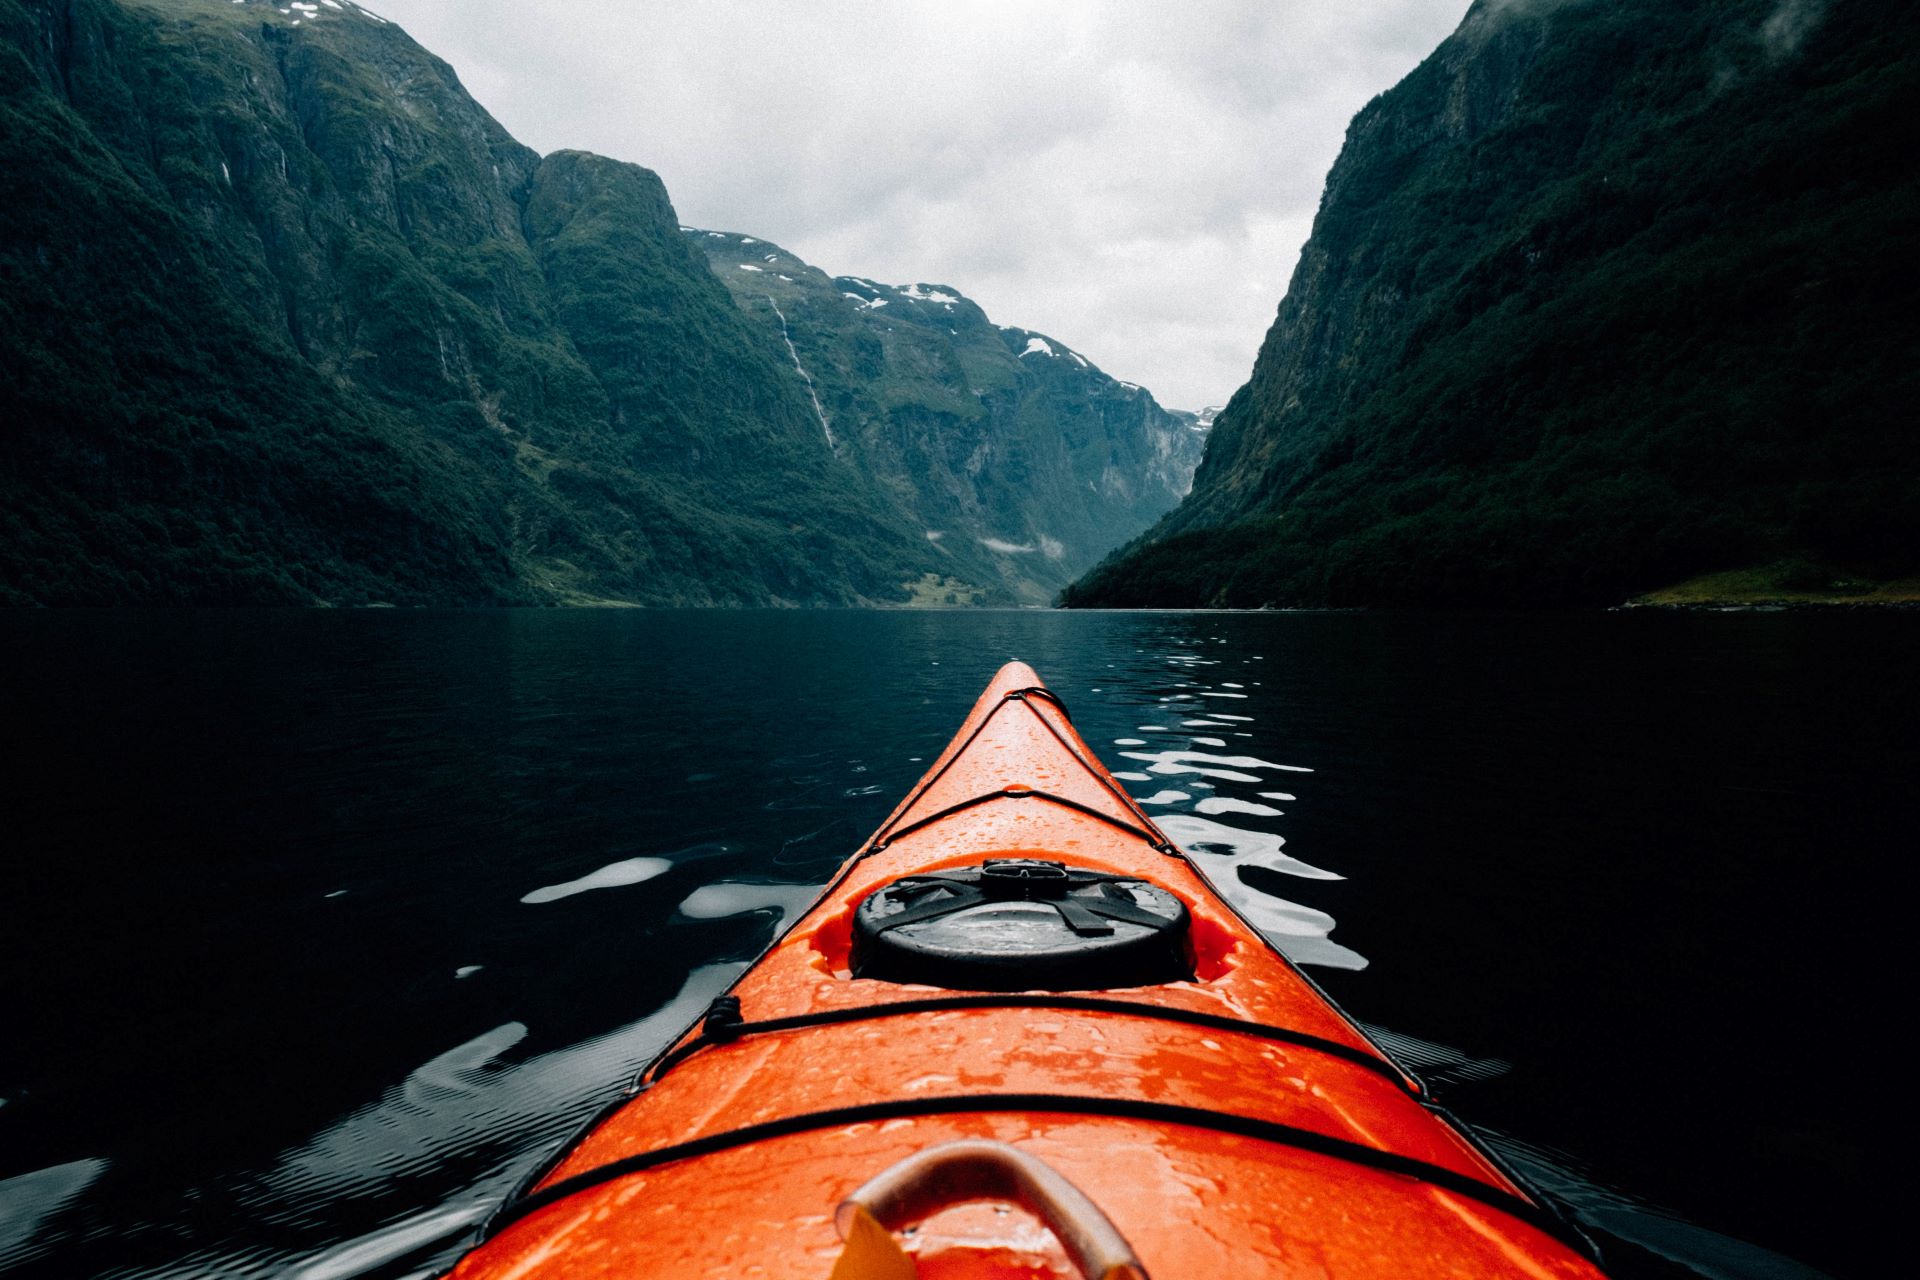 An orange kayak on the water between mountains